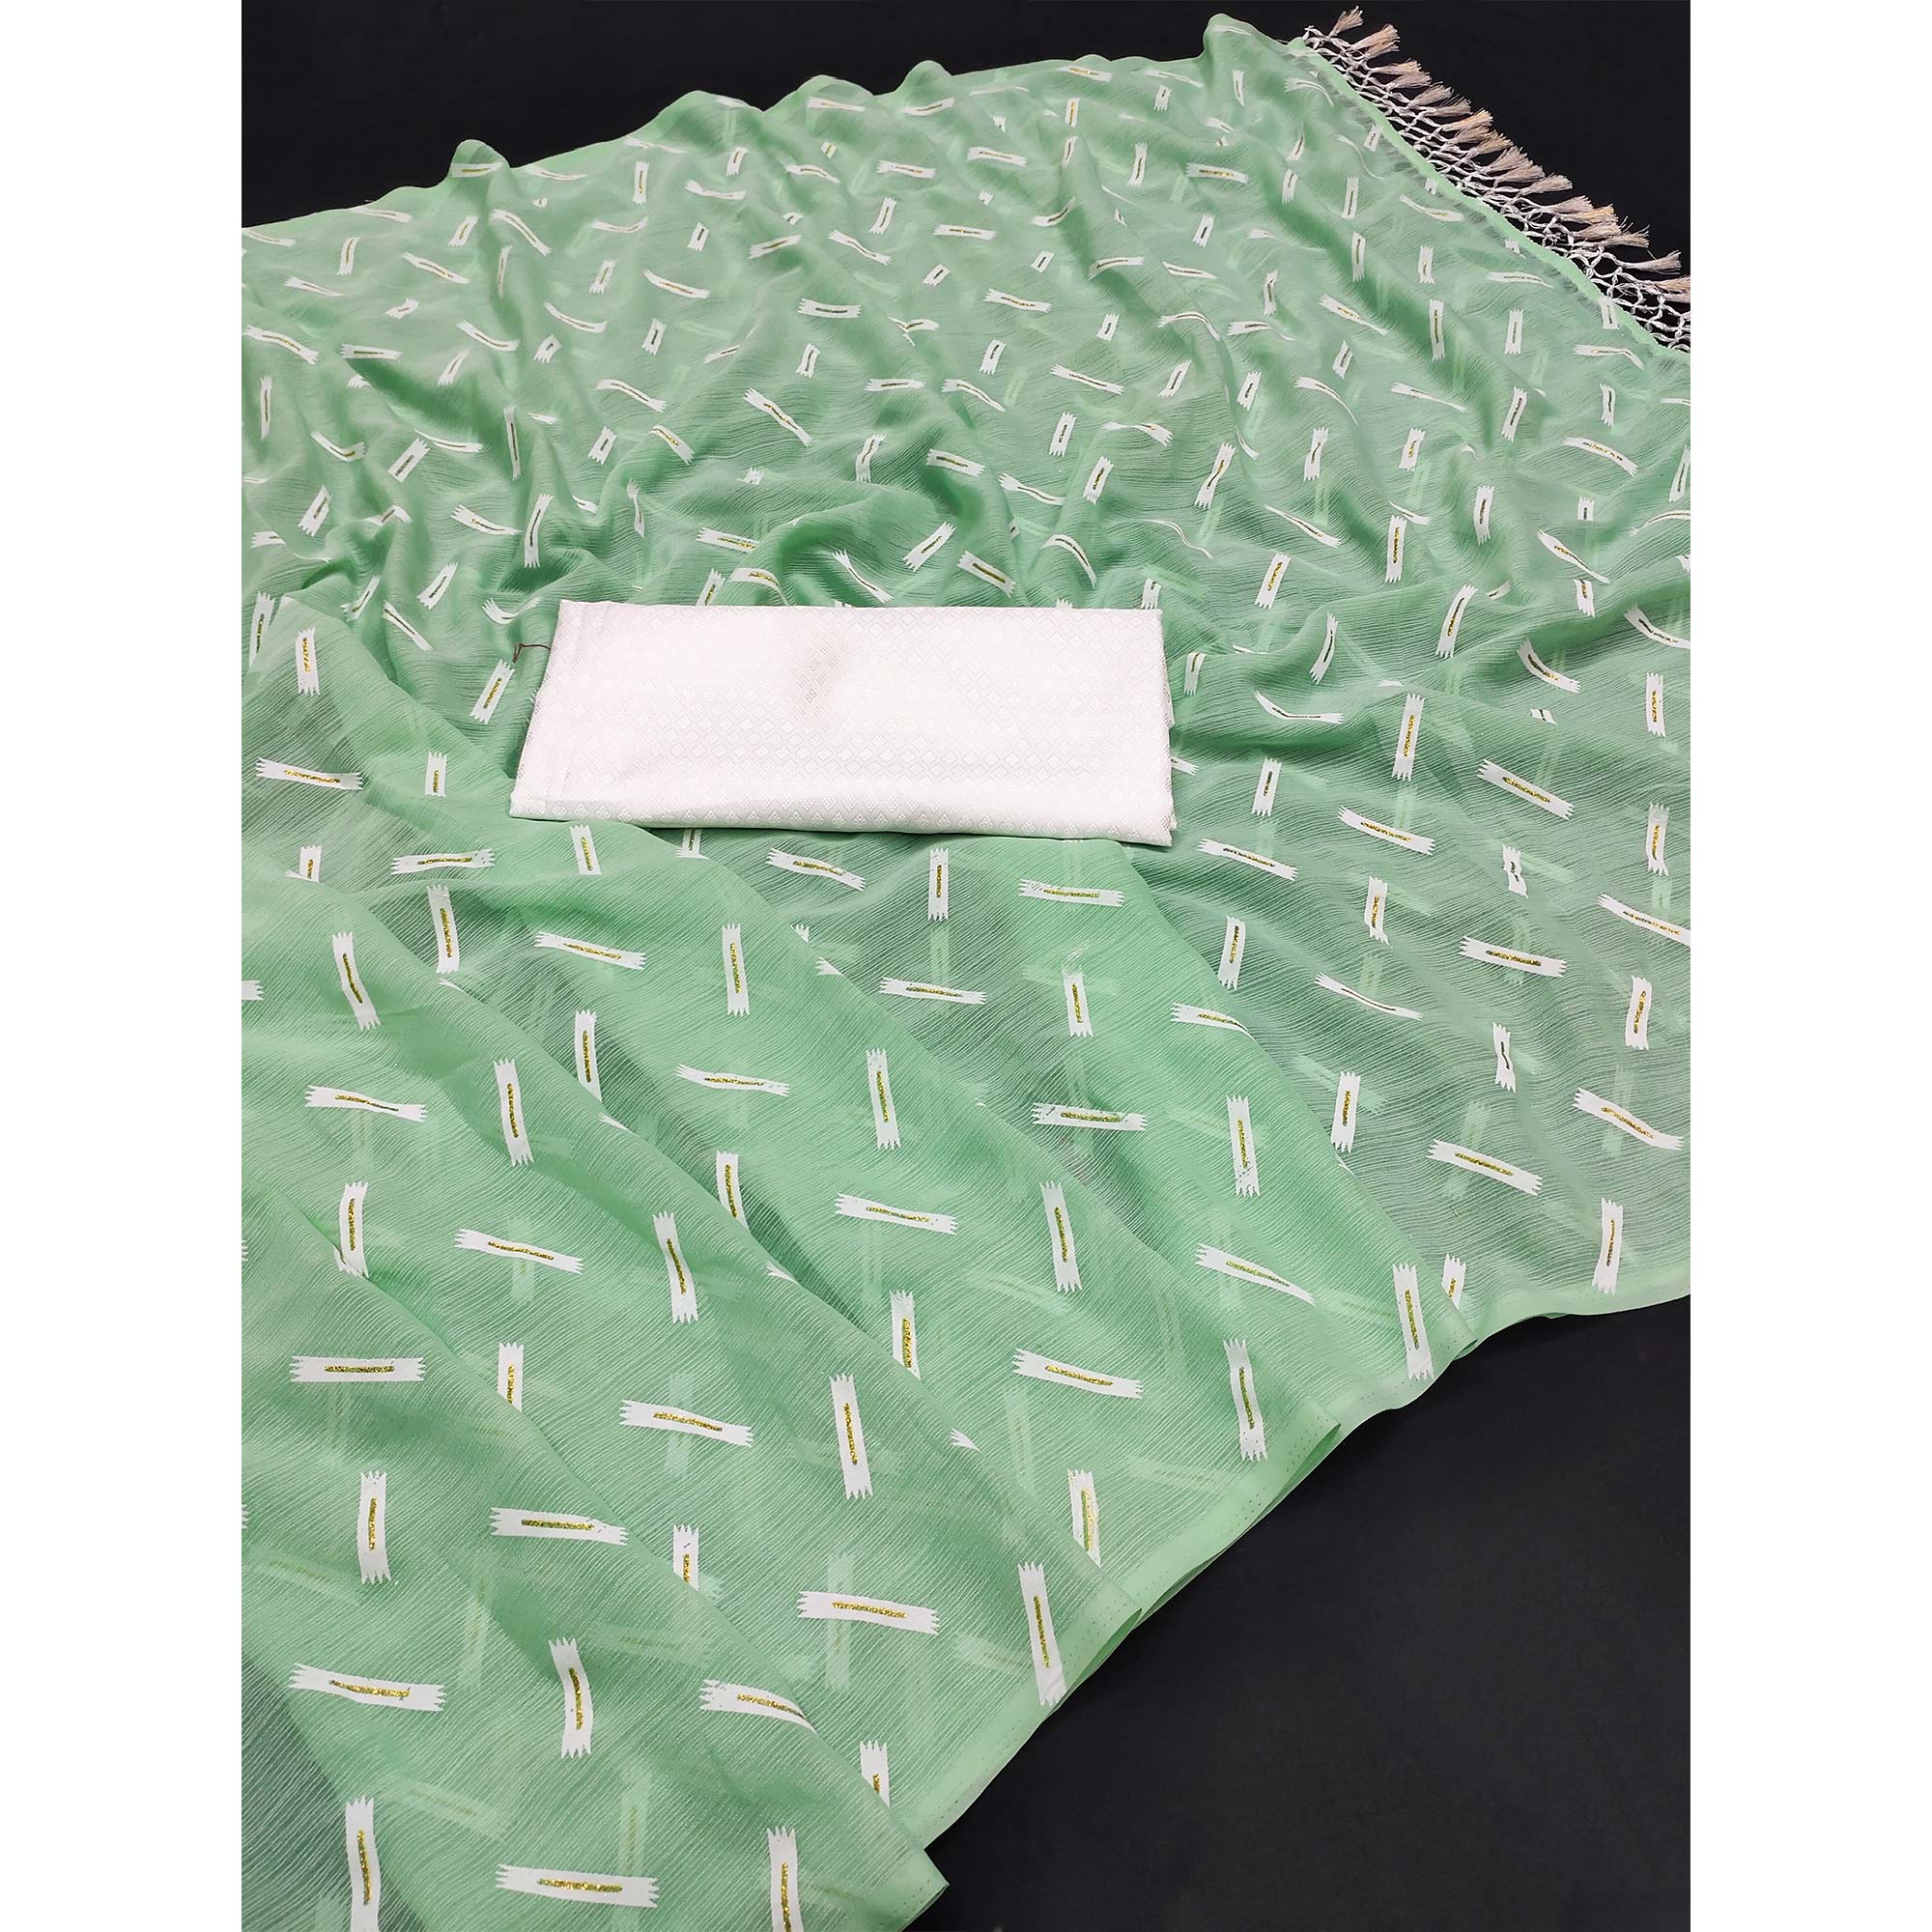 Pista Green Printed Chiffon Saree With Tassels